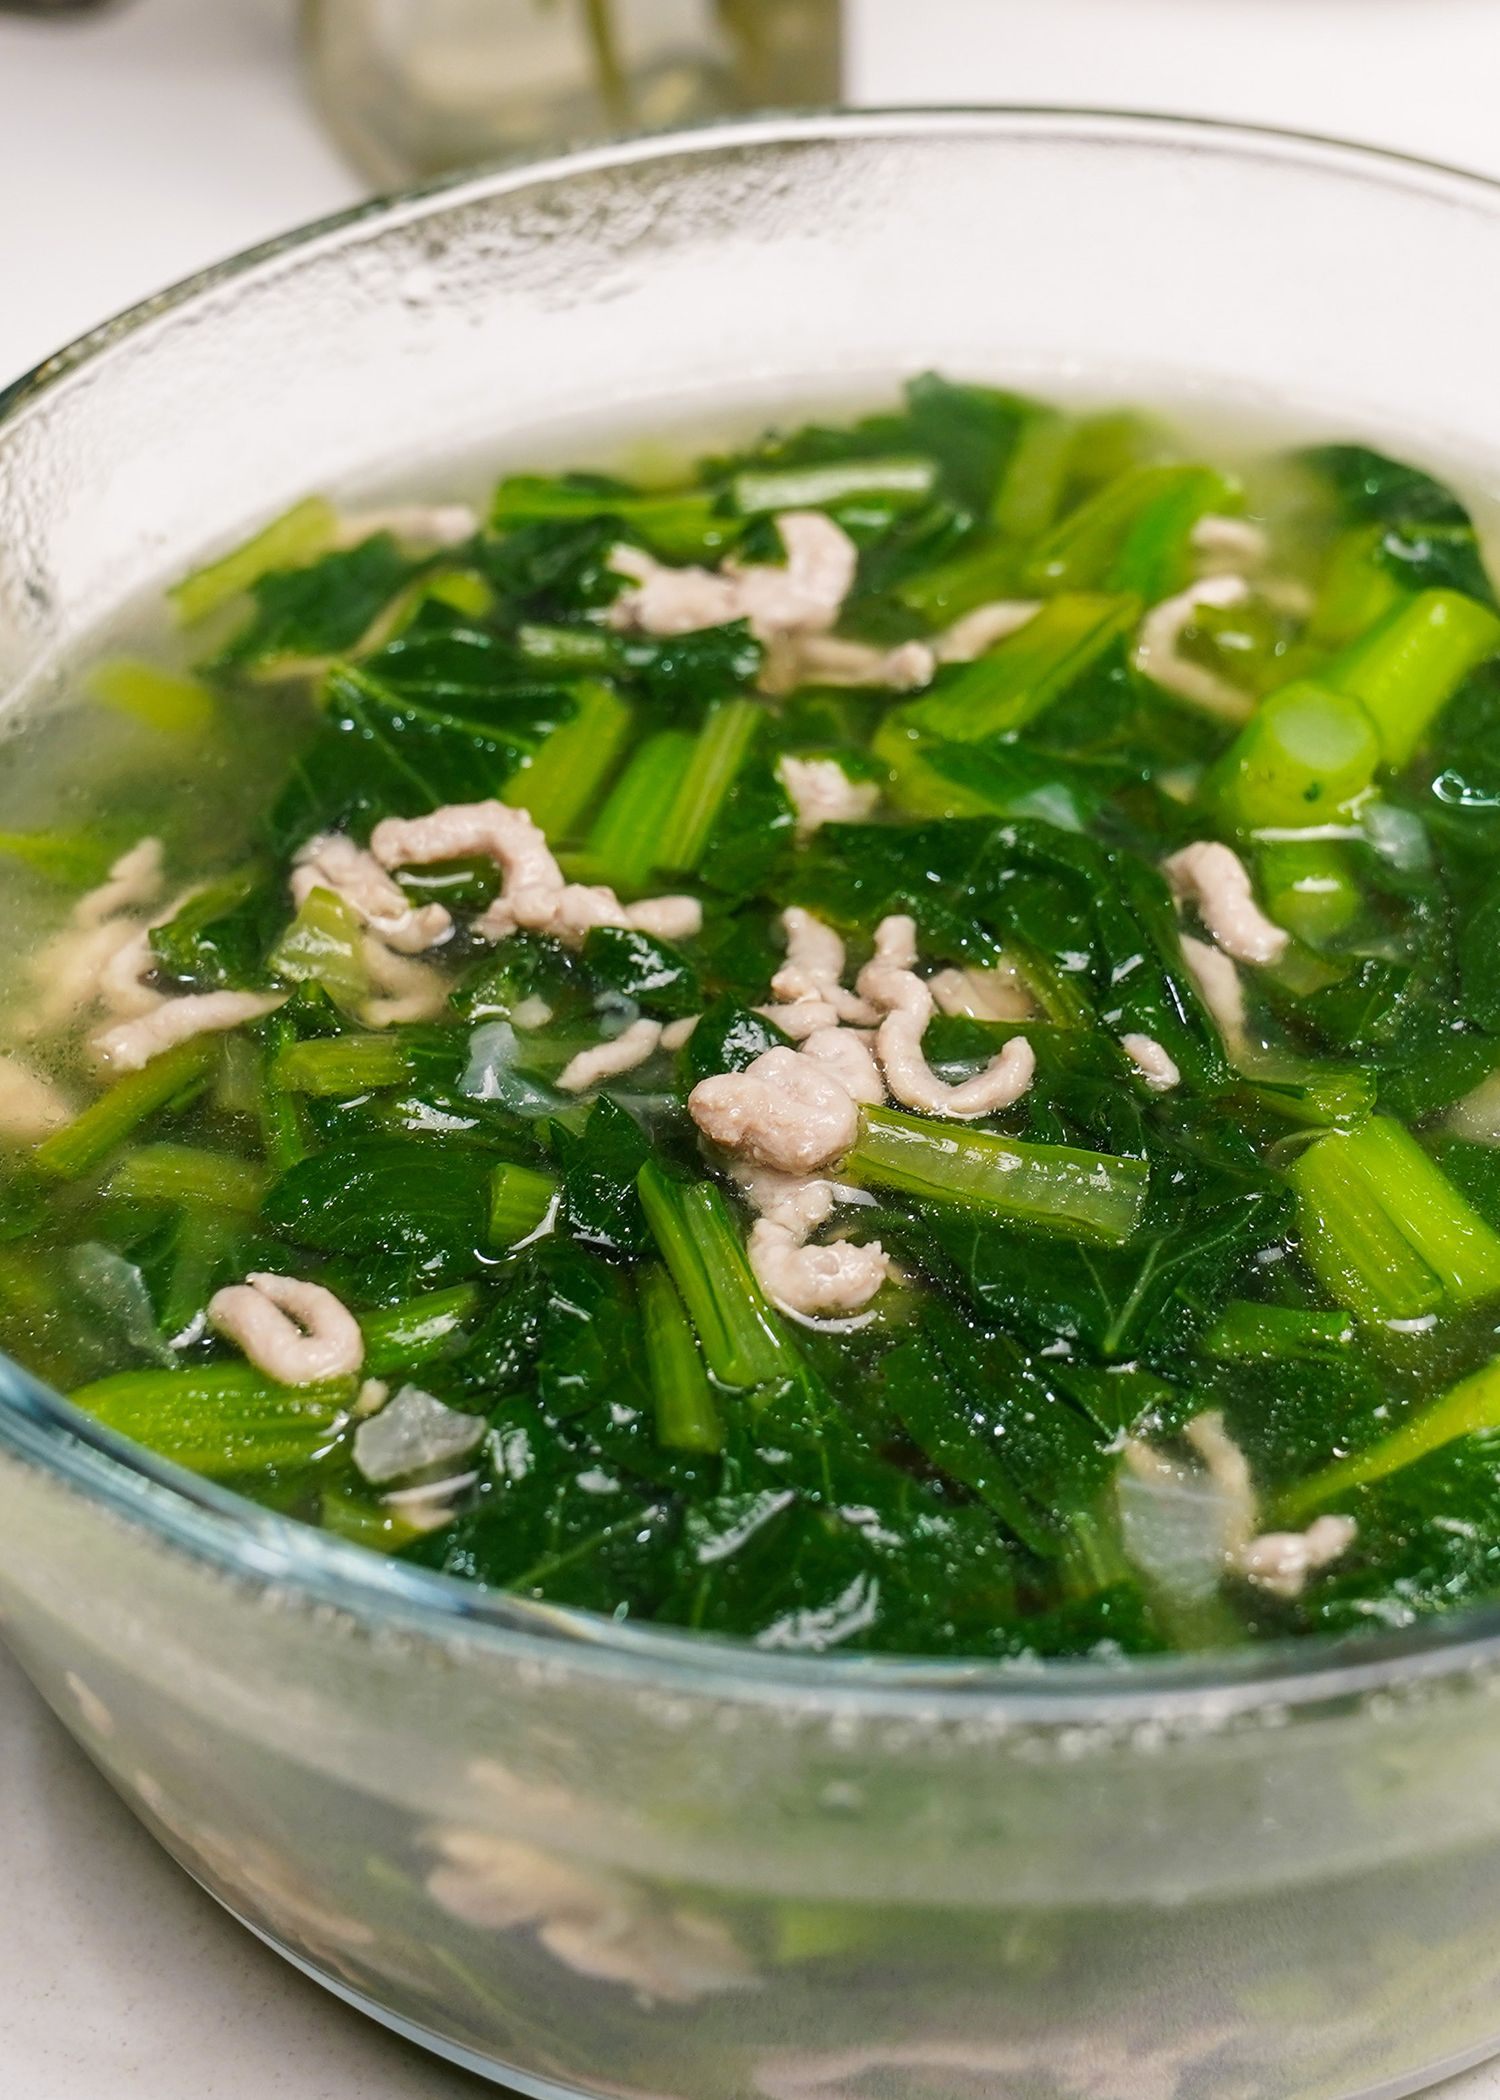 Bạn đã hiểu phương pháp nấu nướng canh hàu rau xanh cải giải nhiệt độ mang lại ngày hè chưa?